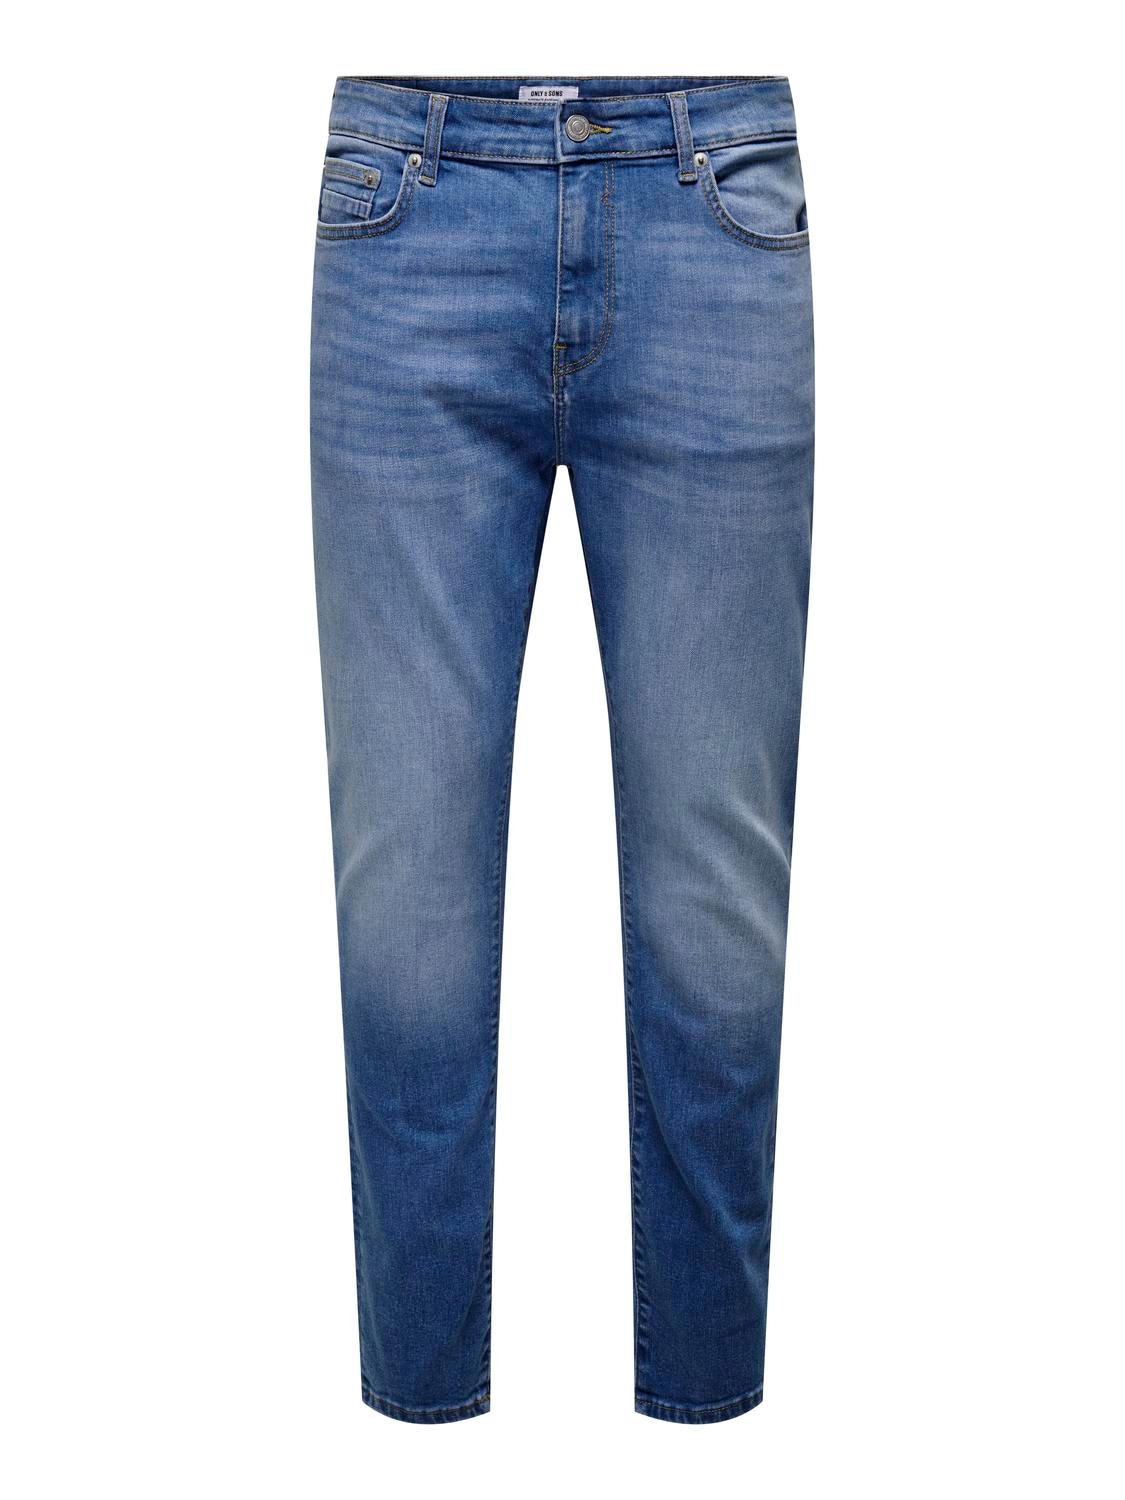 ONLY & SONS ONSRope Slimtape Denim Jeans -Light Medium Blue Denim - 22027844